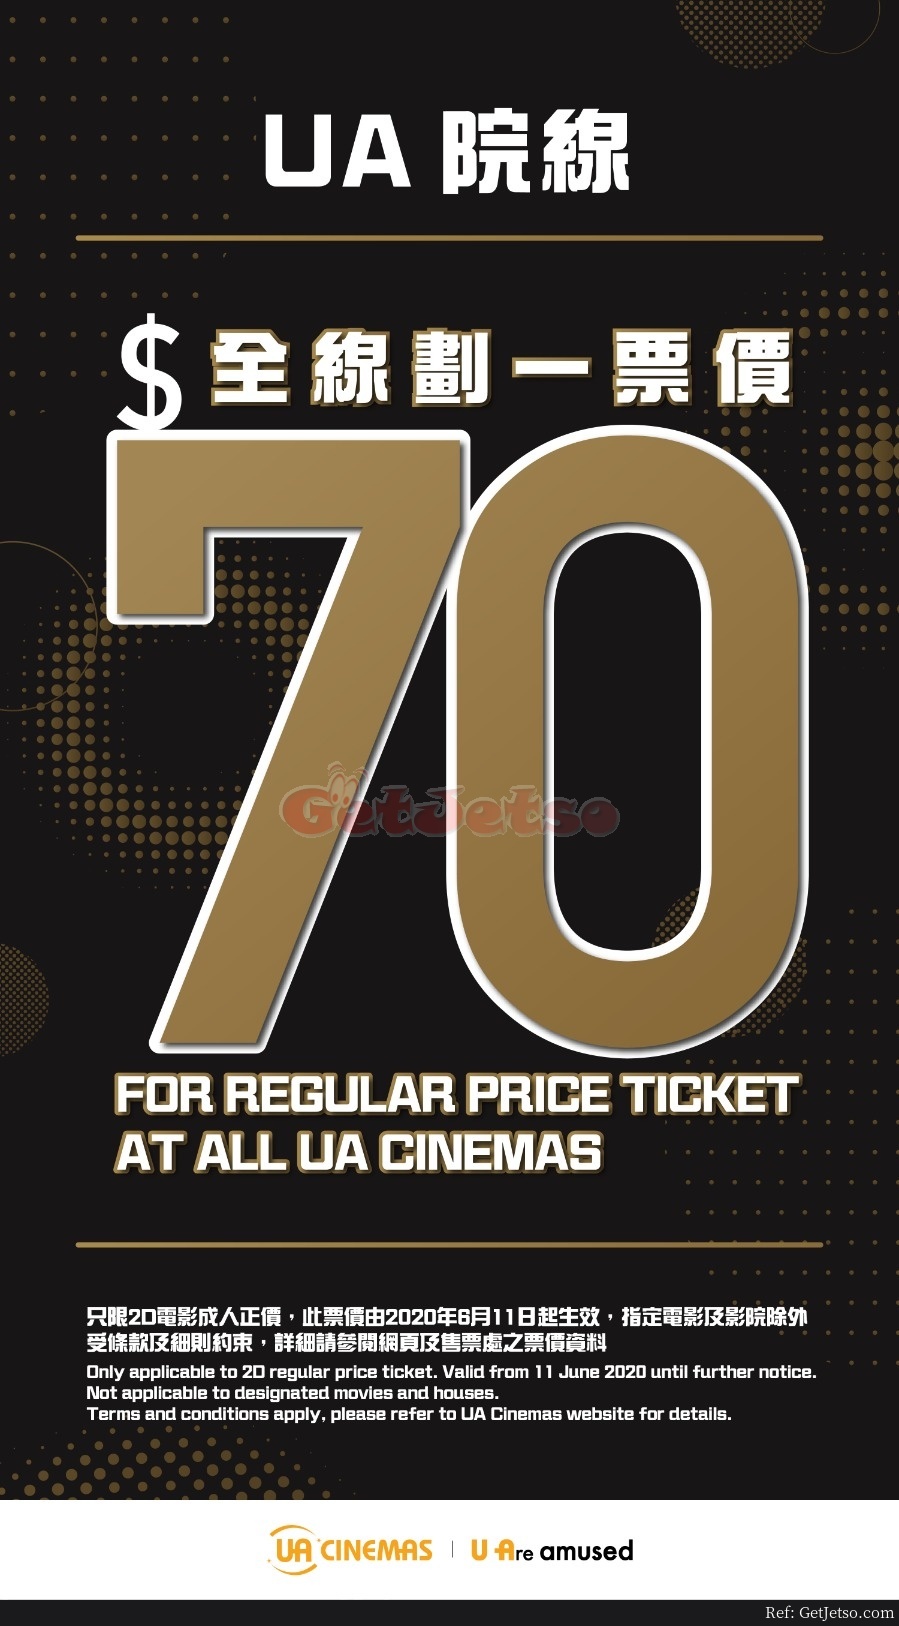 UA Cinemas 劃一成人2D正價票價優惠(20年8月28日起)圖片1